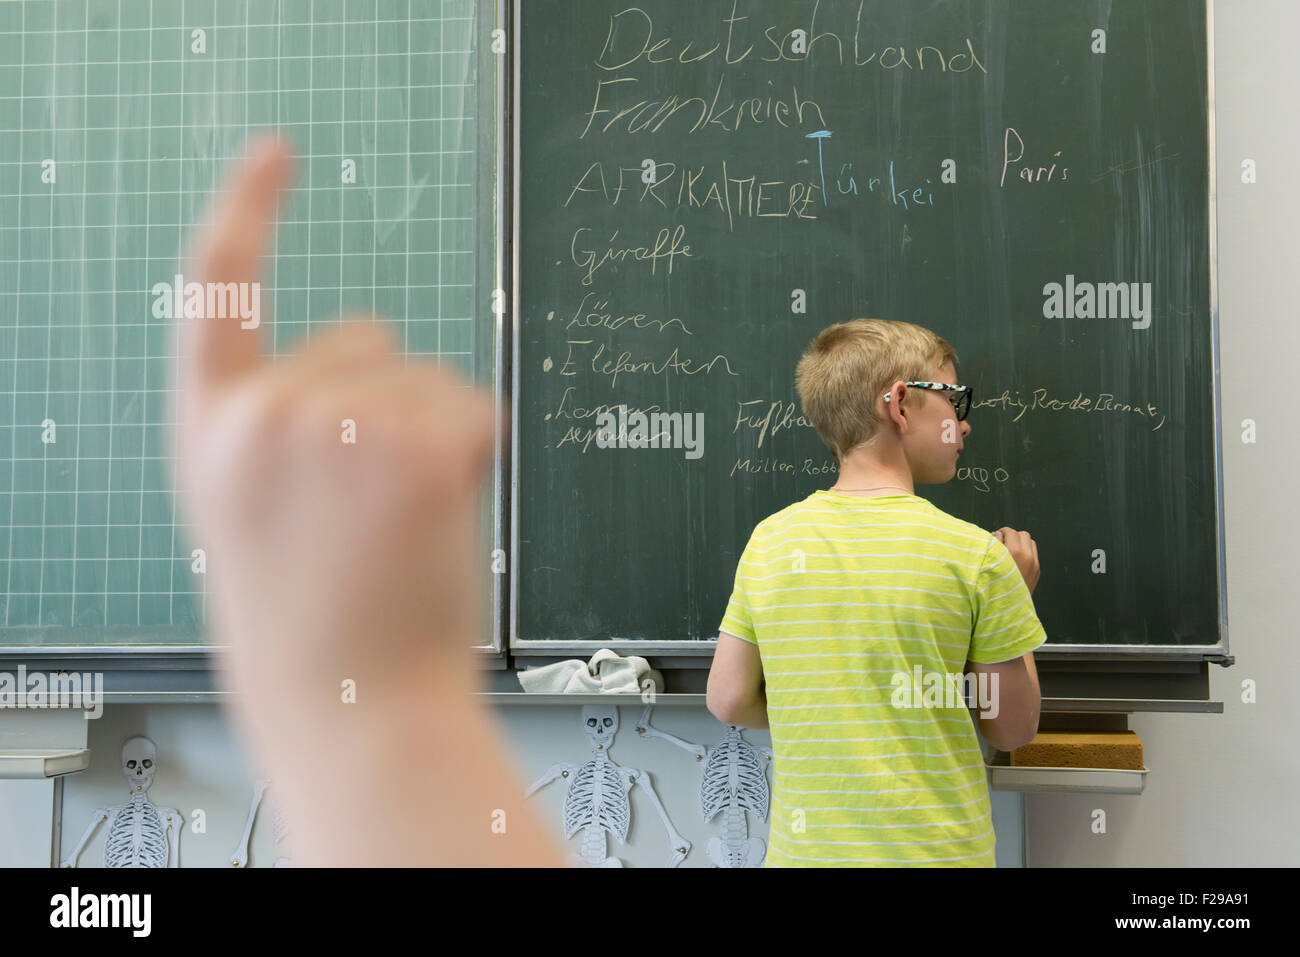 El colegial escrito sobre pizarra y una colegiala levantando la mano en el aula, Munich, Baviera, Alemania Foto de stock